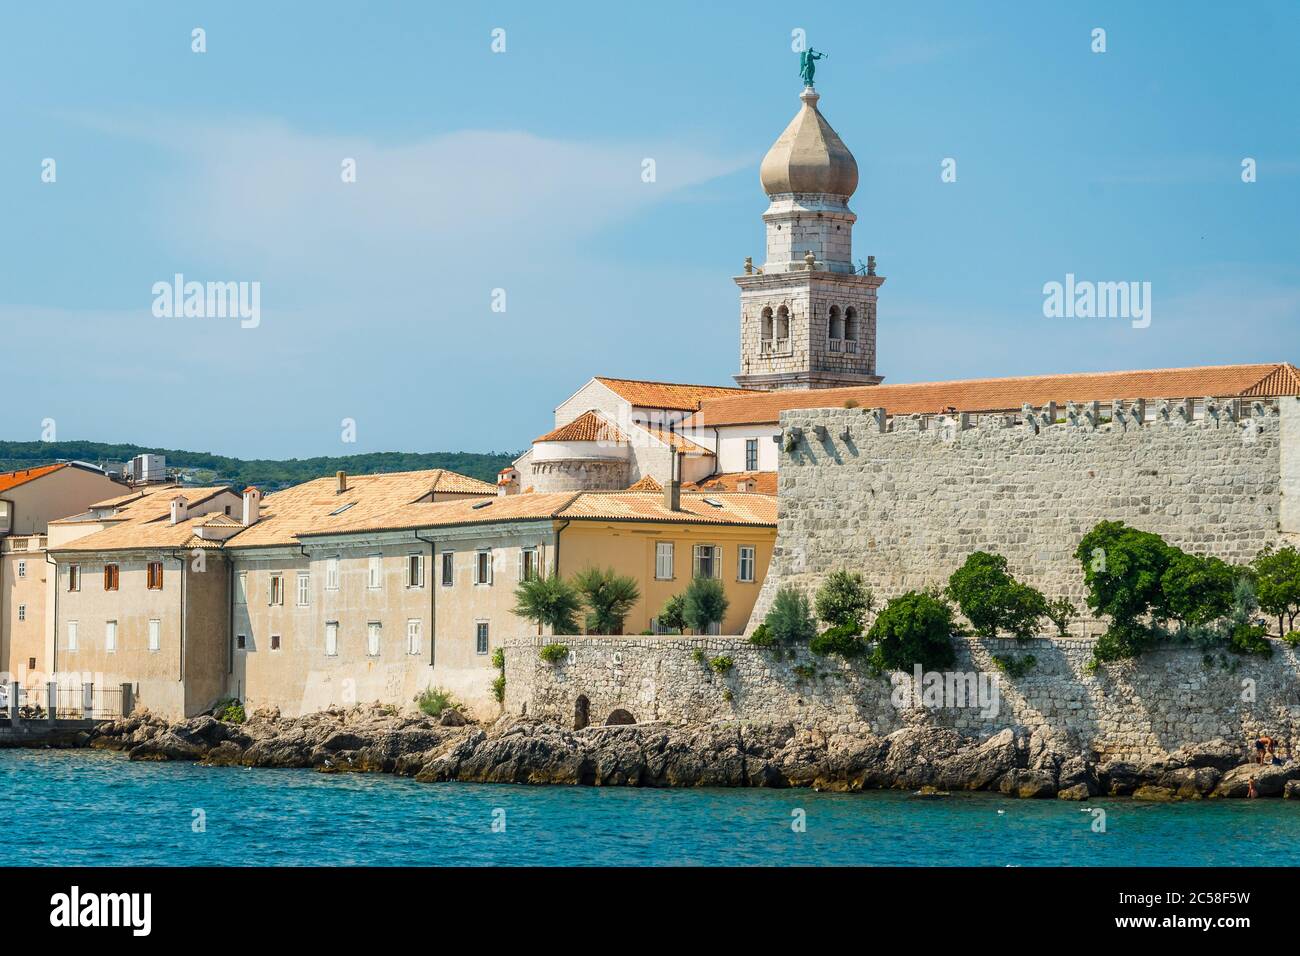 Vista della città vecchia costiera mediterranea Krk con il campanile della chiesa e le fortificazioni. Krk è una famosa destinazione turistica sull'isola di Krk, Foto Stock